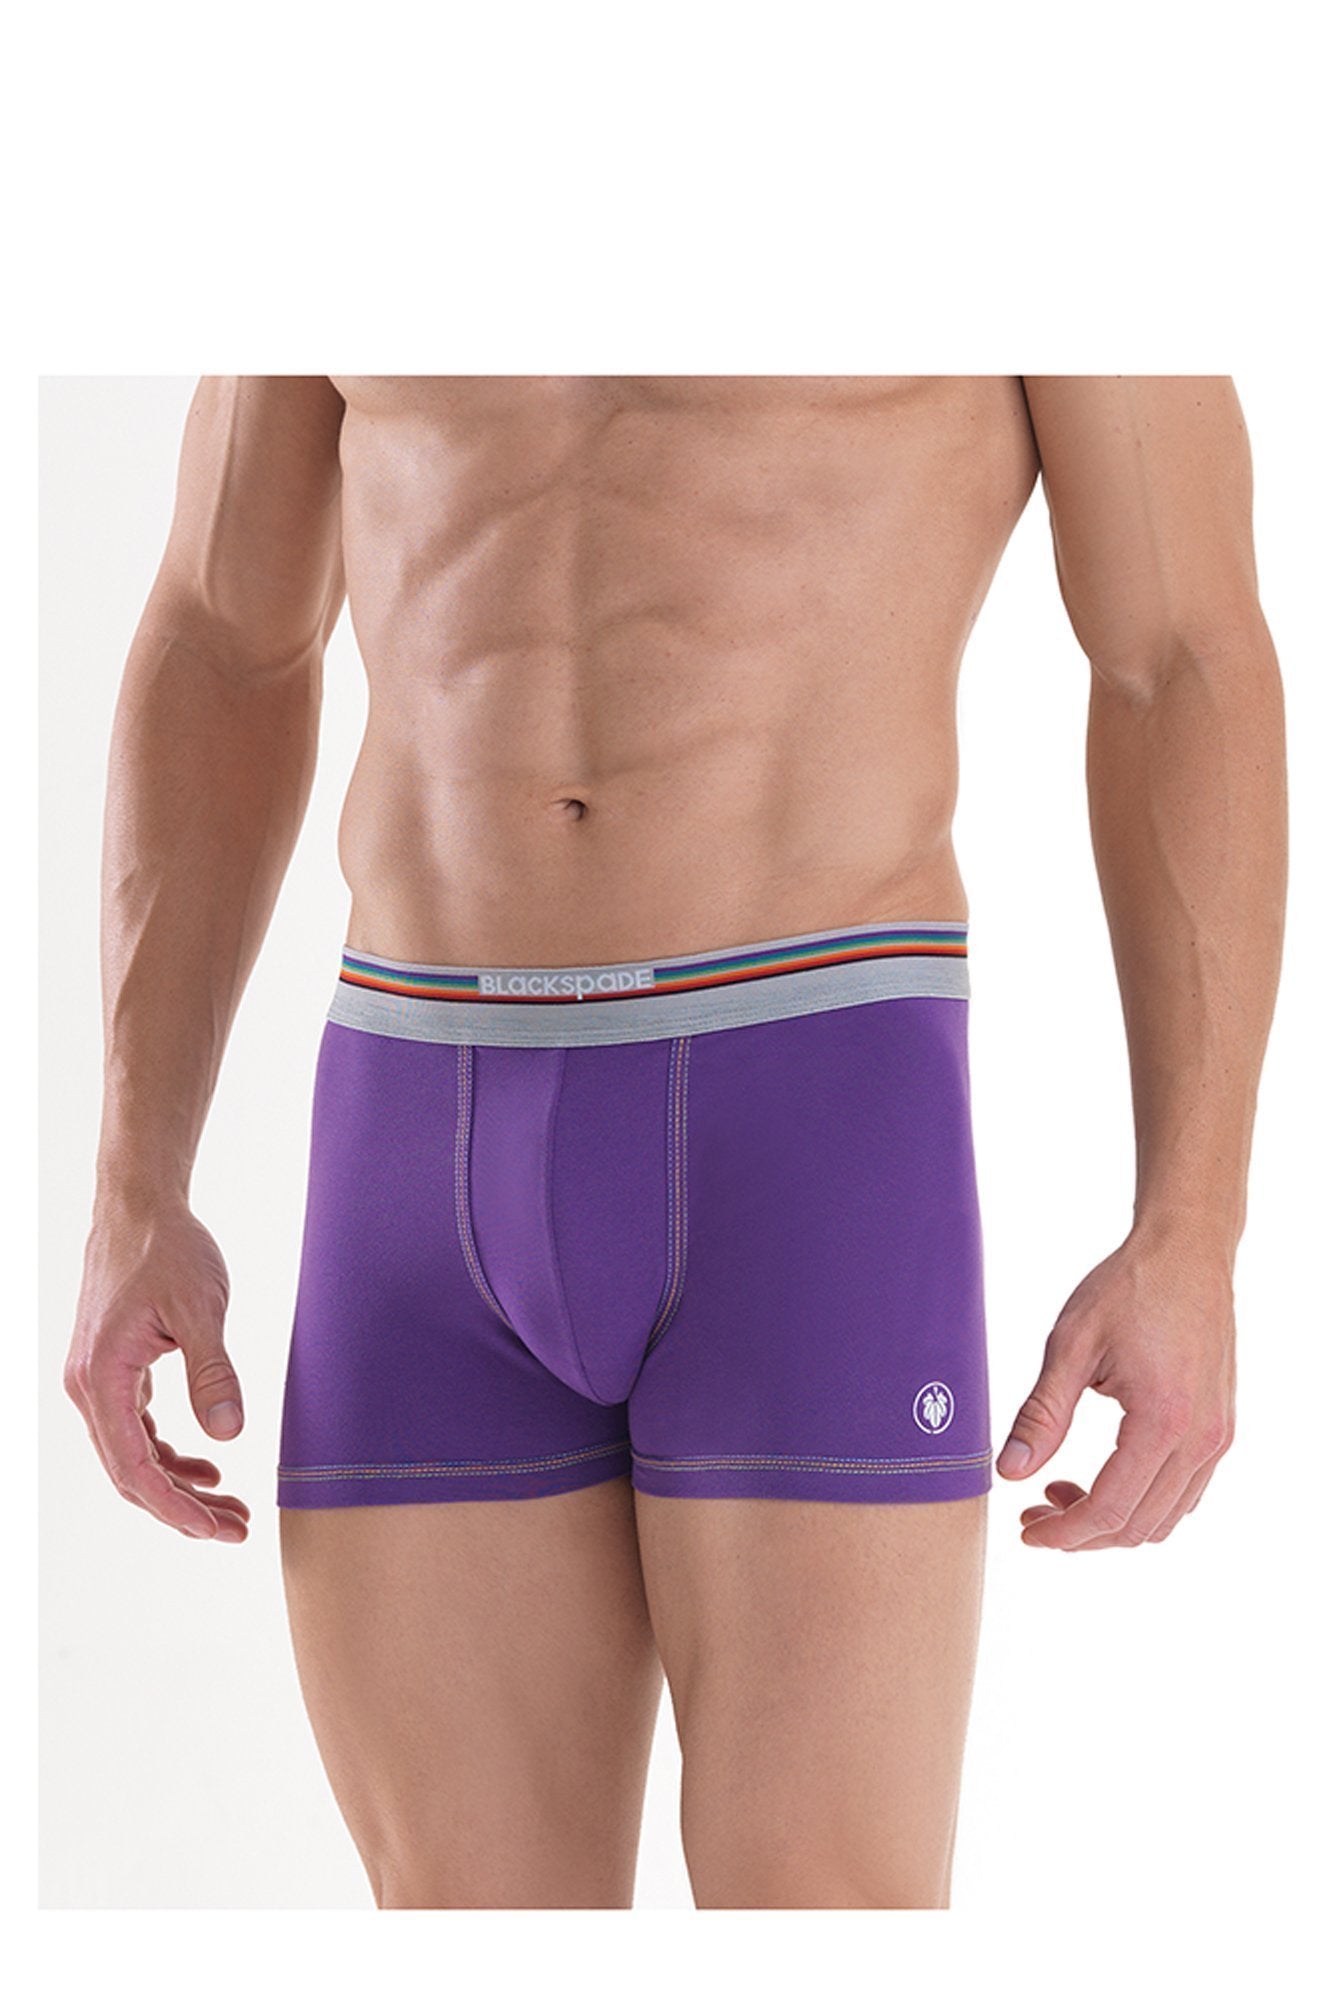 Mens' and Boy's Boxer underwear blackspade Purple M 94% Cotton 6% Elastane